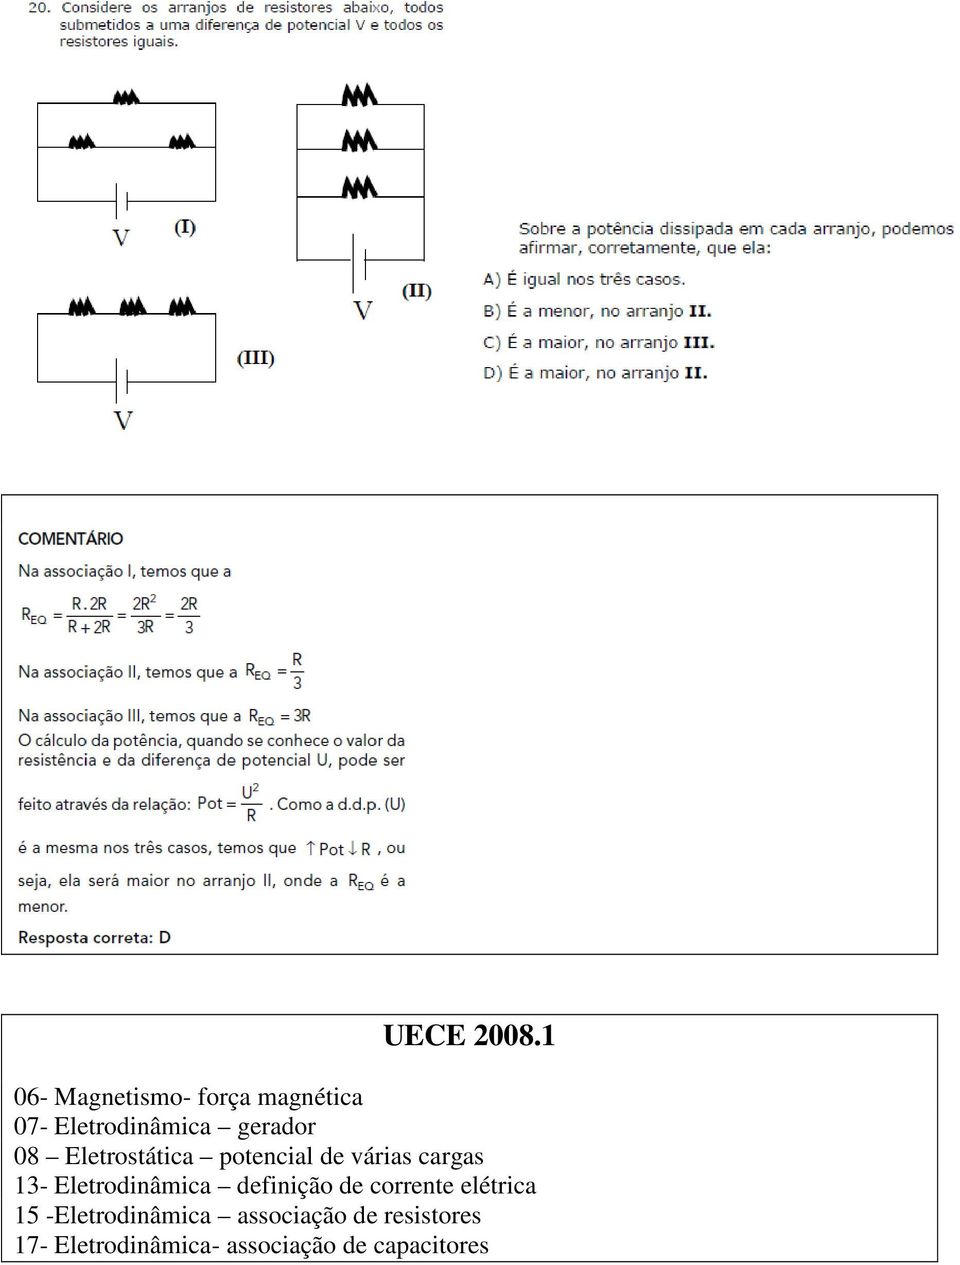 Eletrostática potencial de várias cargas 13- Eletrodinâmica